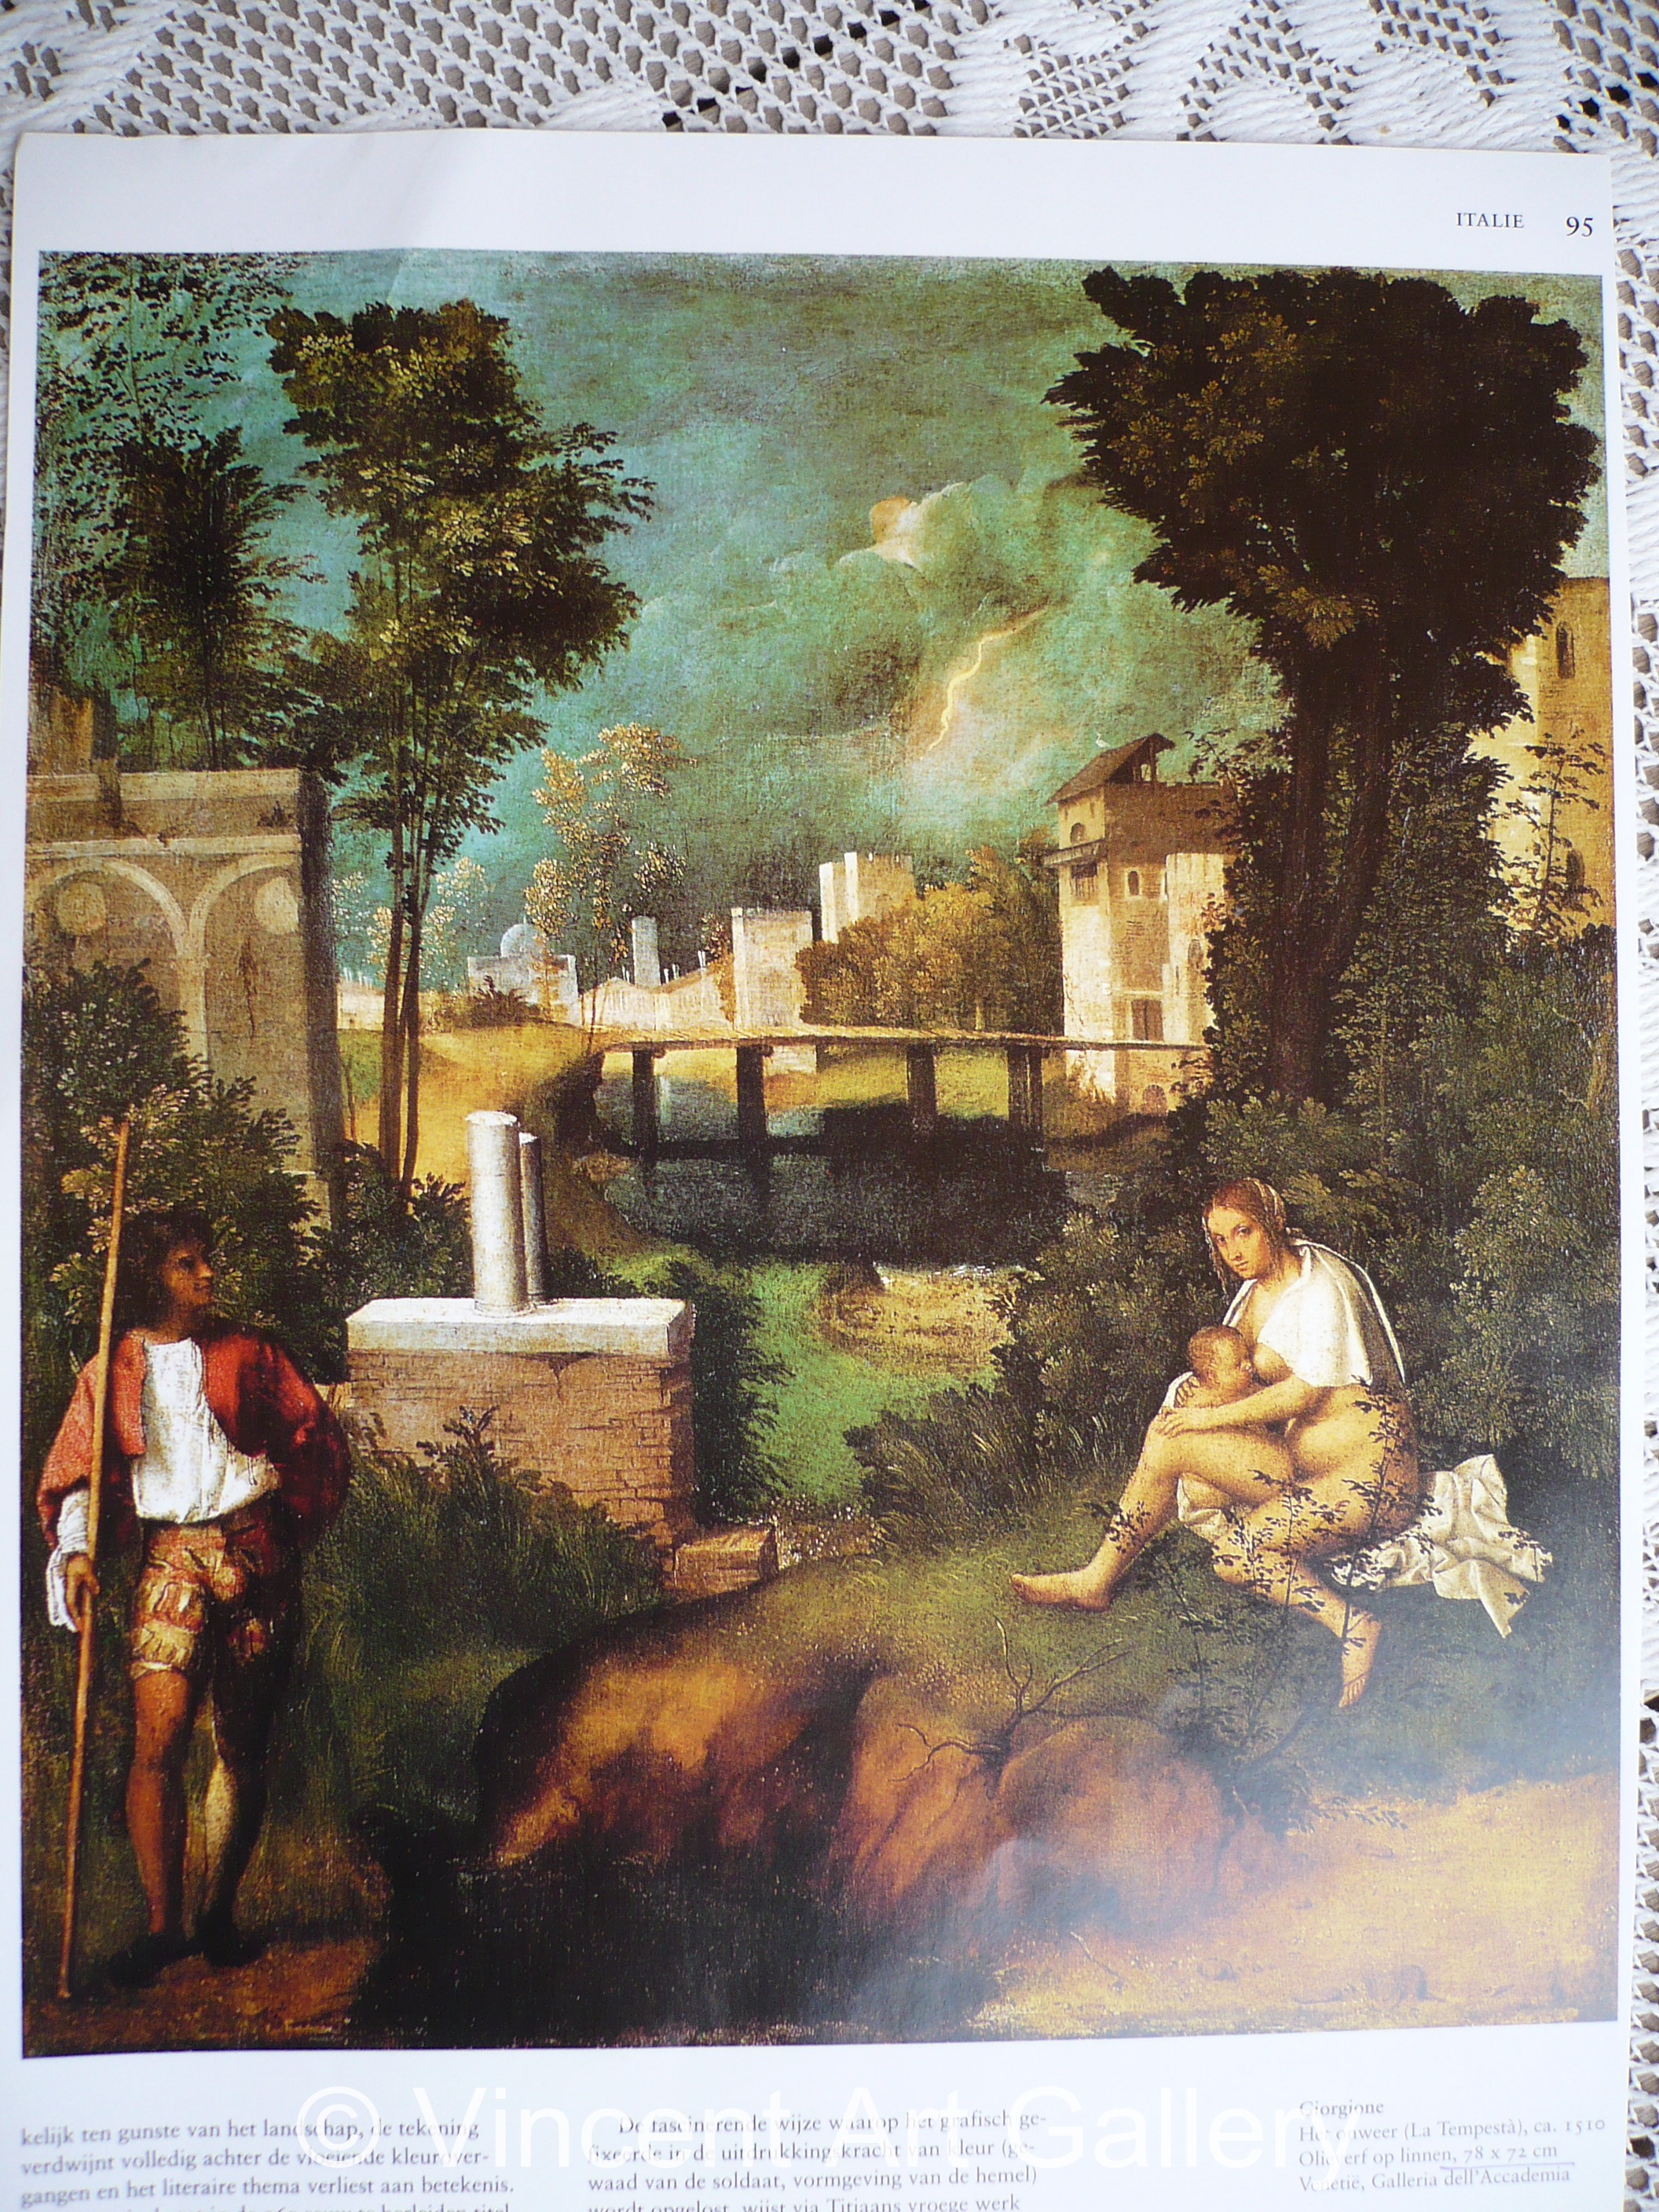 A519, Giorgione, Thunderstorm, extra photograph for Johnson